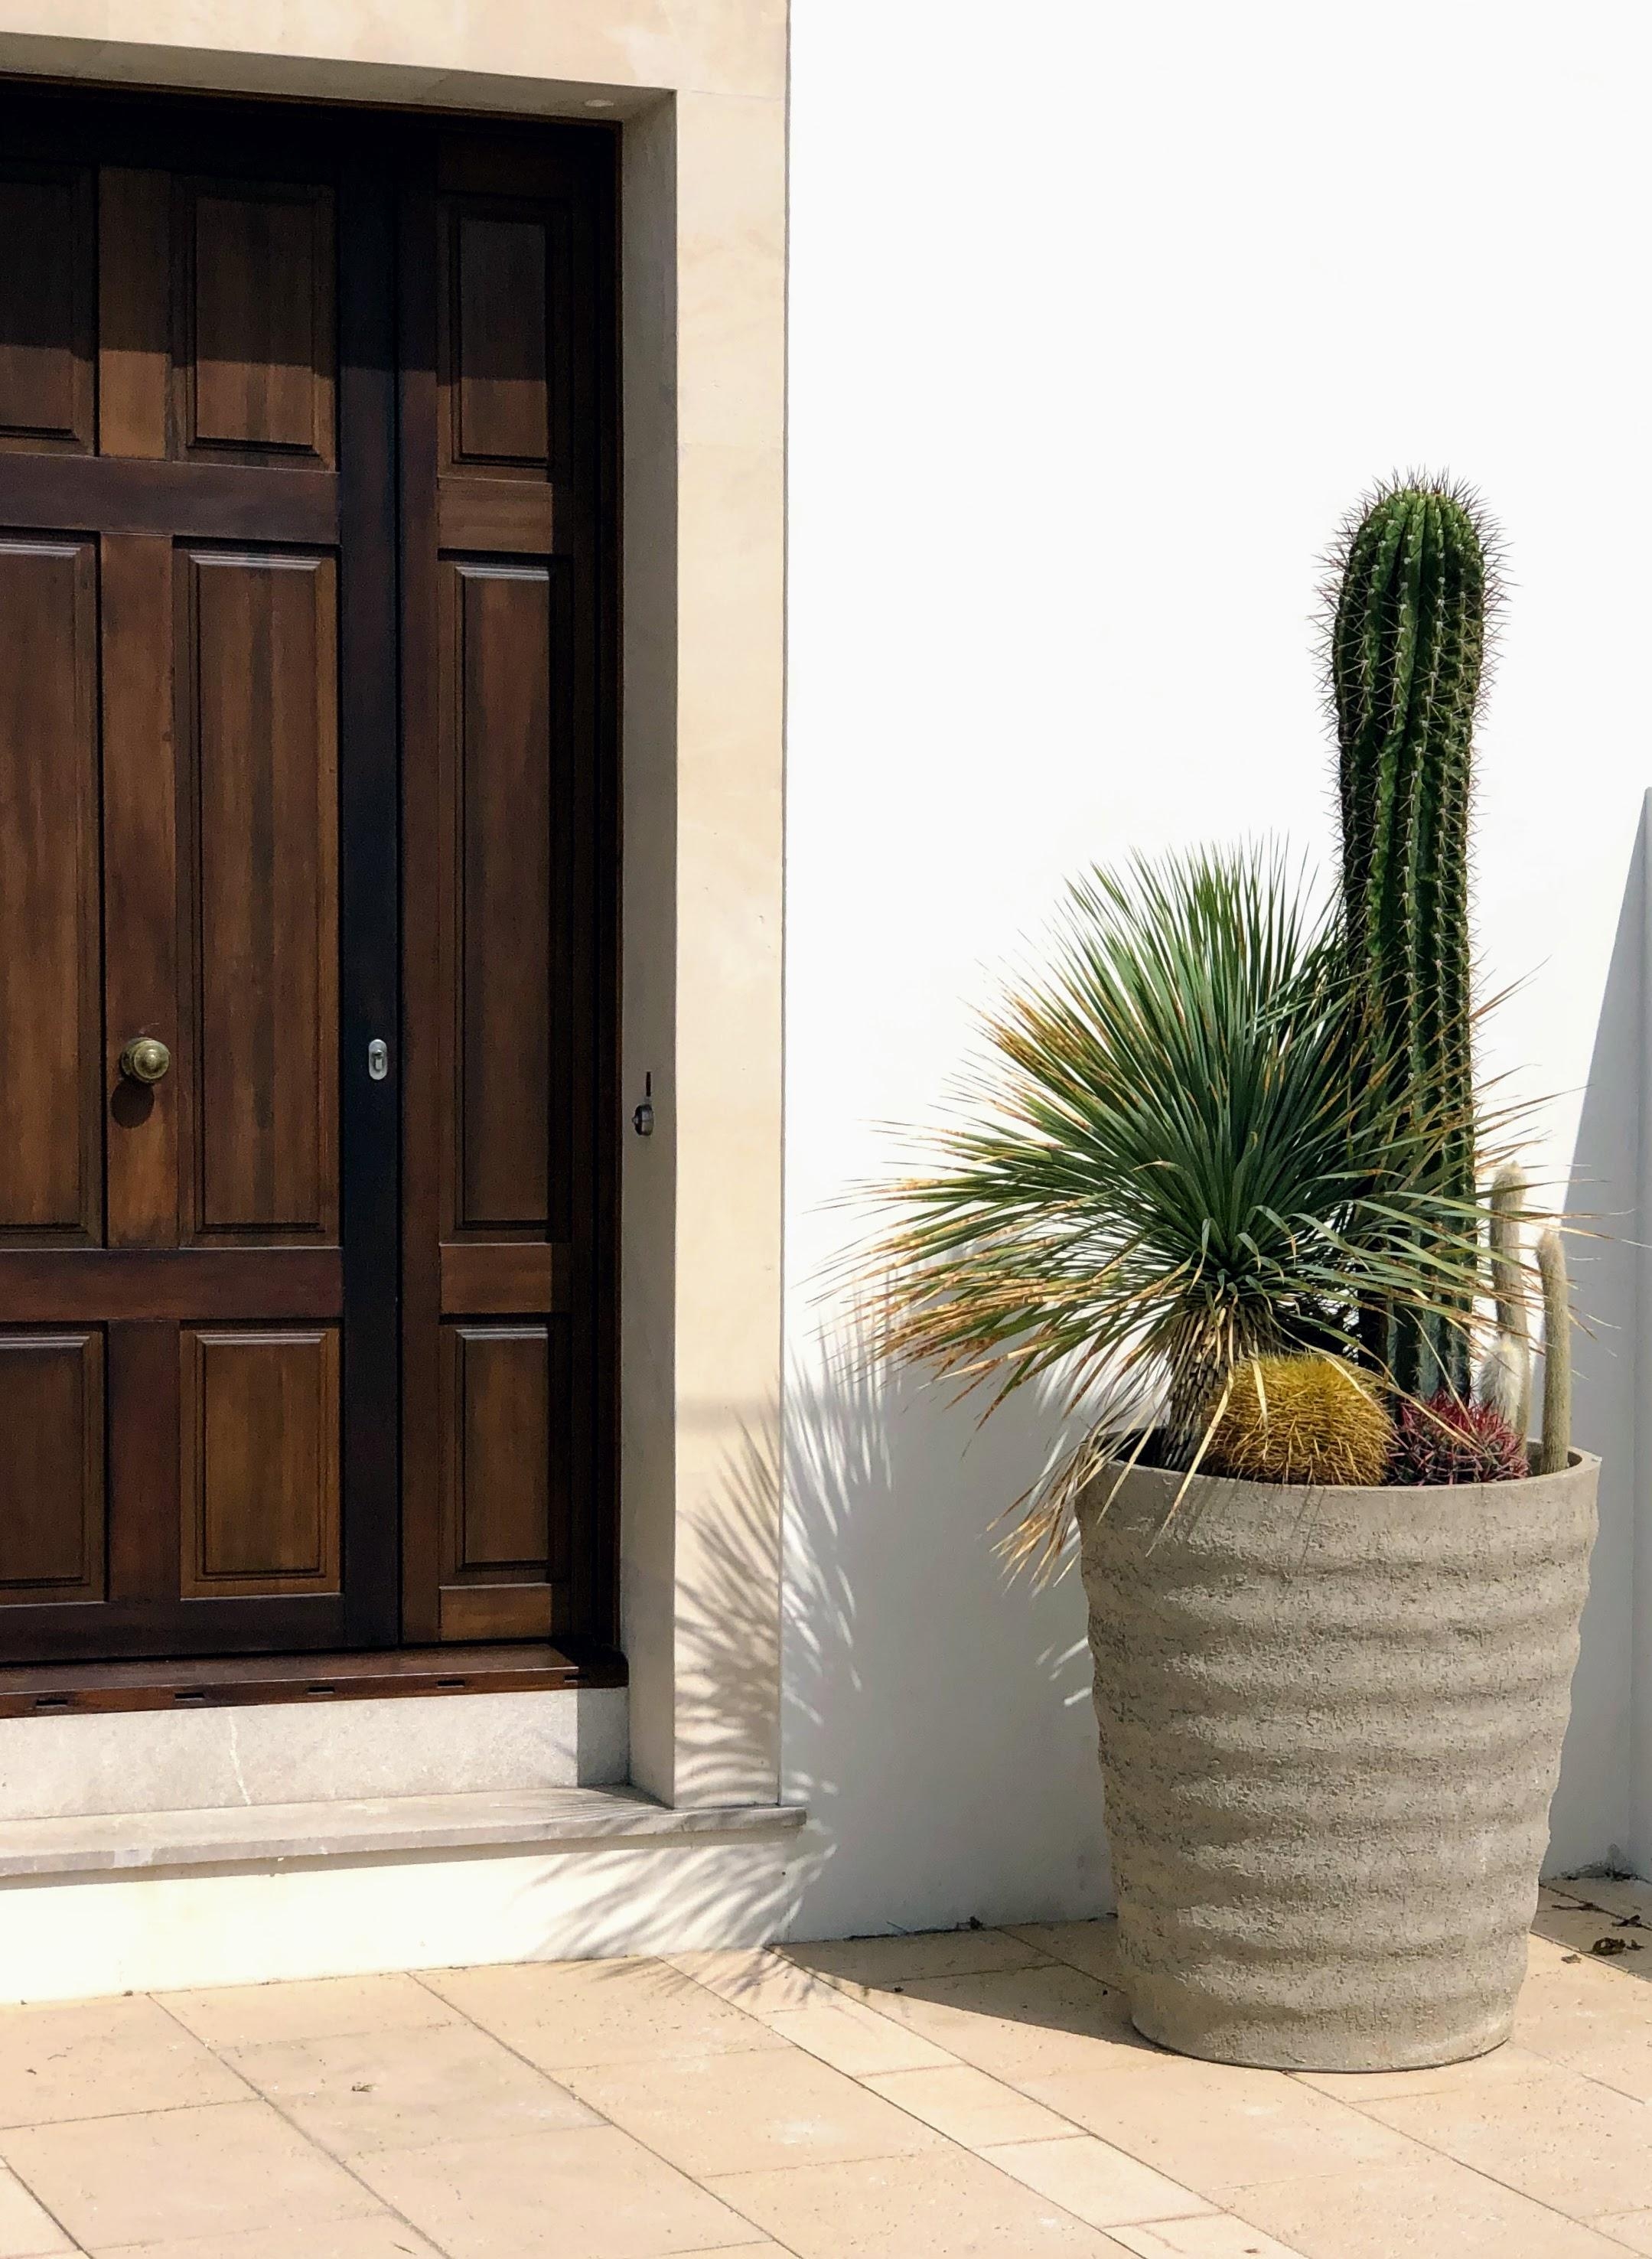 #haustür #kaktus #eingang #pflanzenliebe #stilmix #vintage #industriedesign